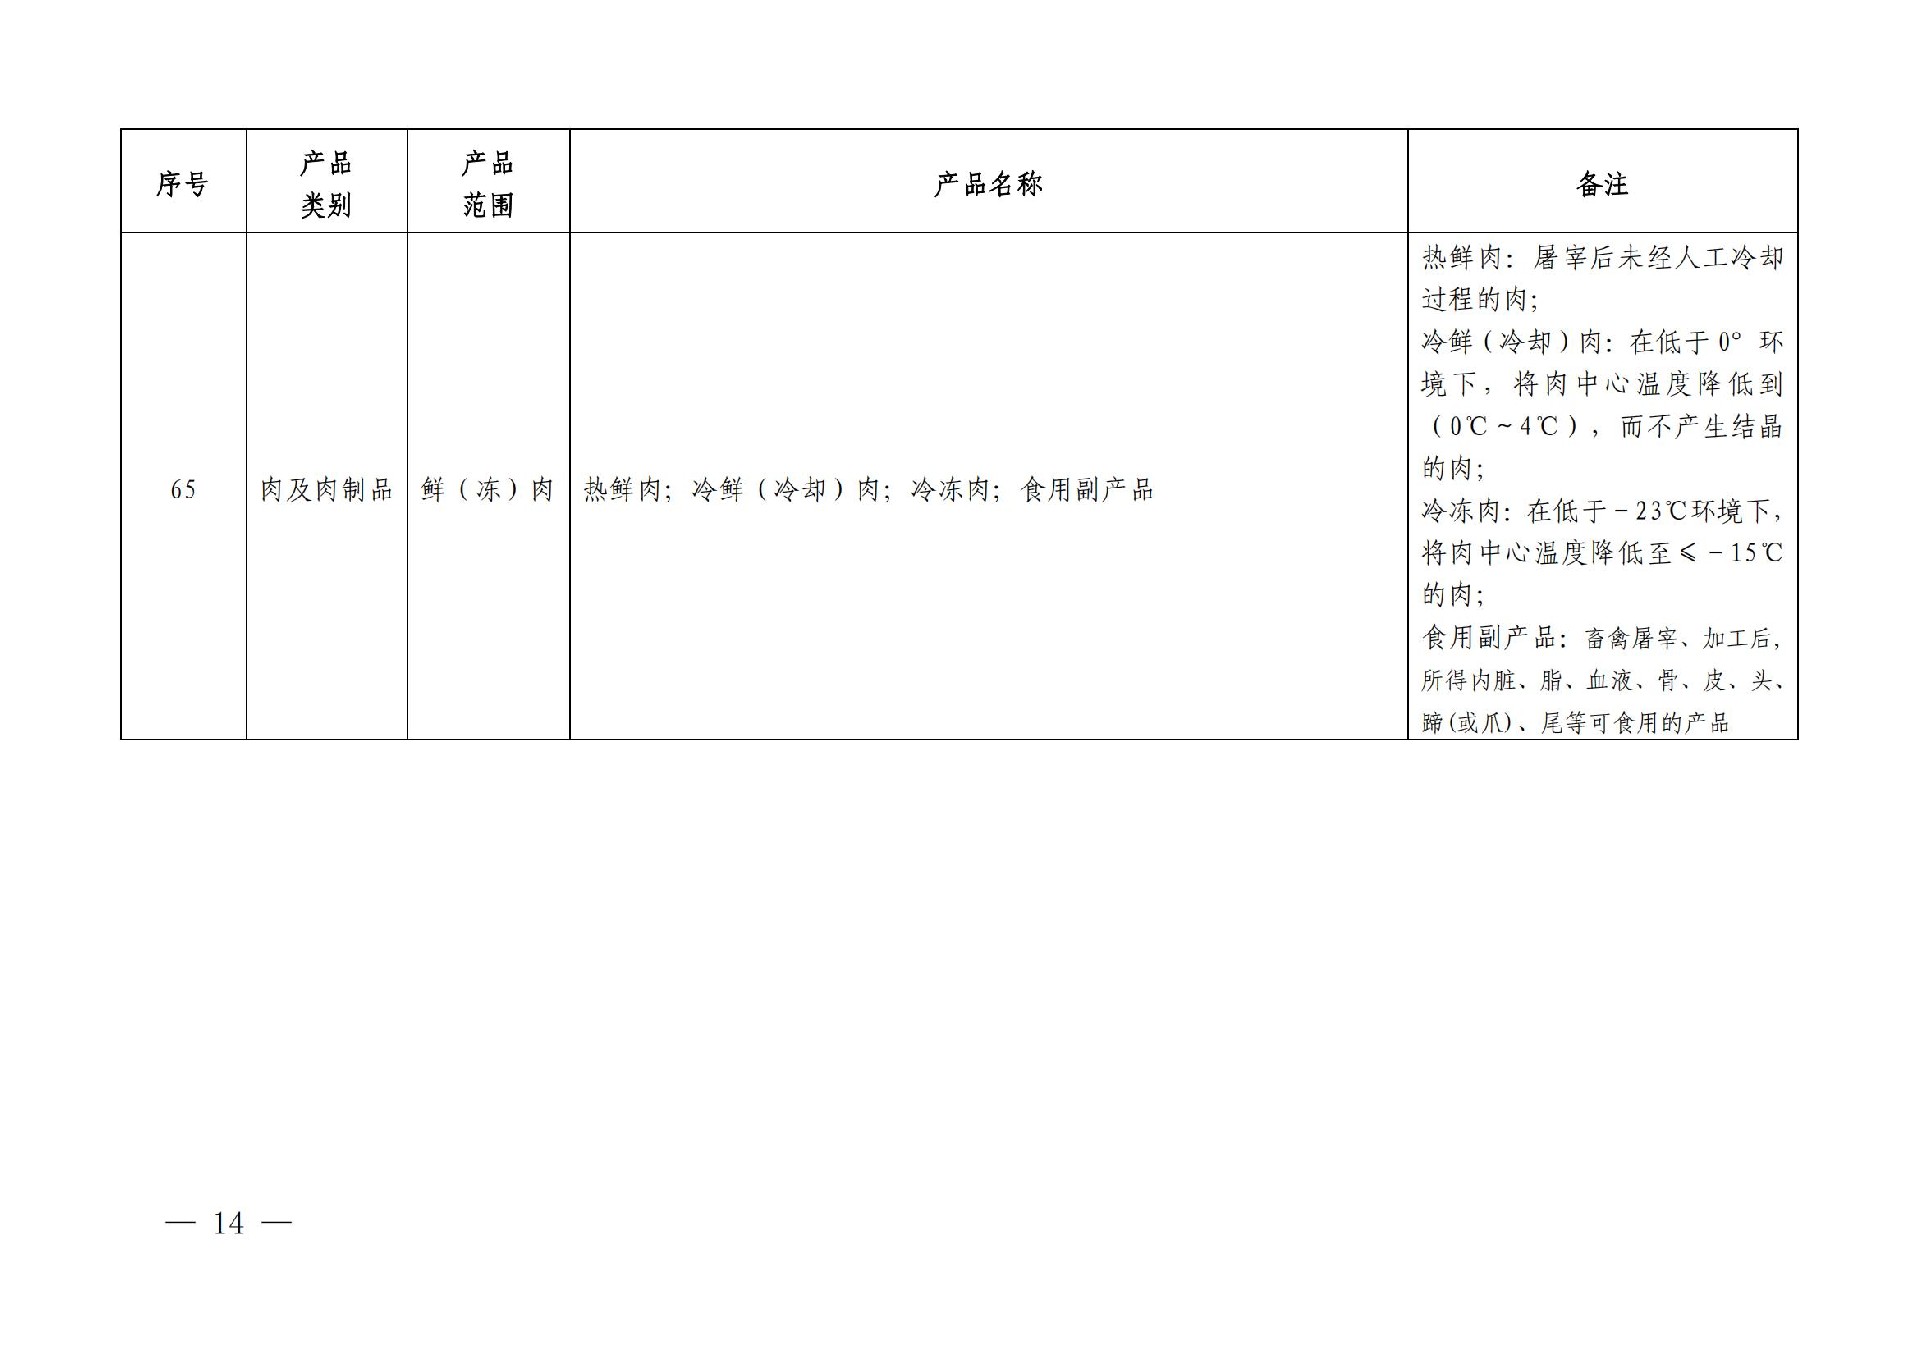 有机产品认证目录【认监委2019年第22号公告】(1)_13.jpg